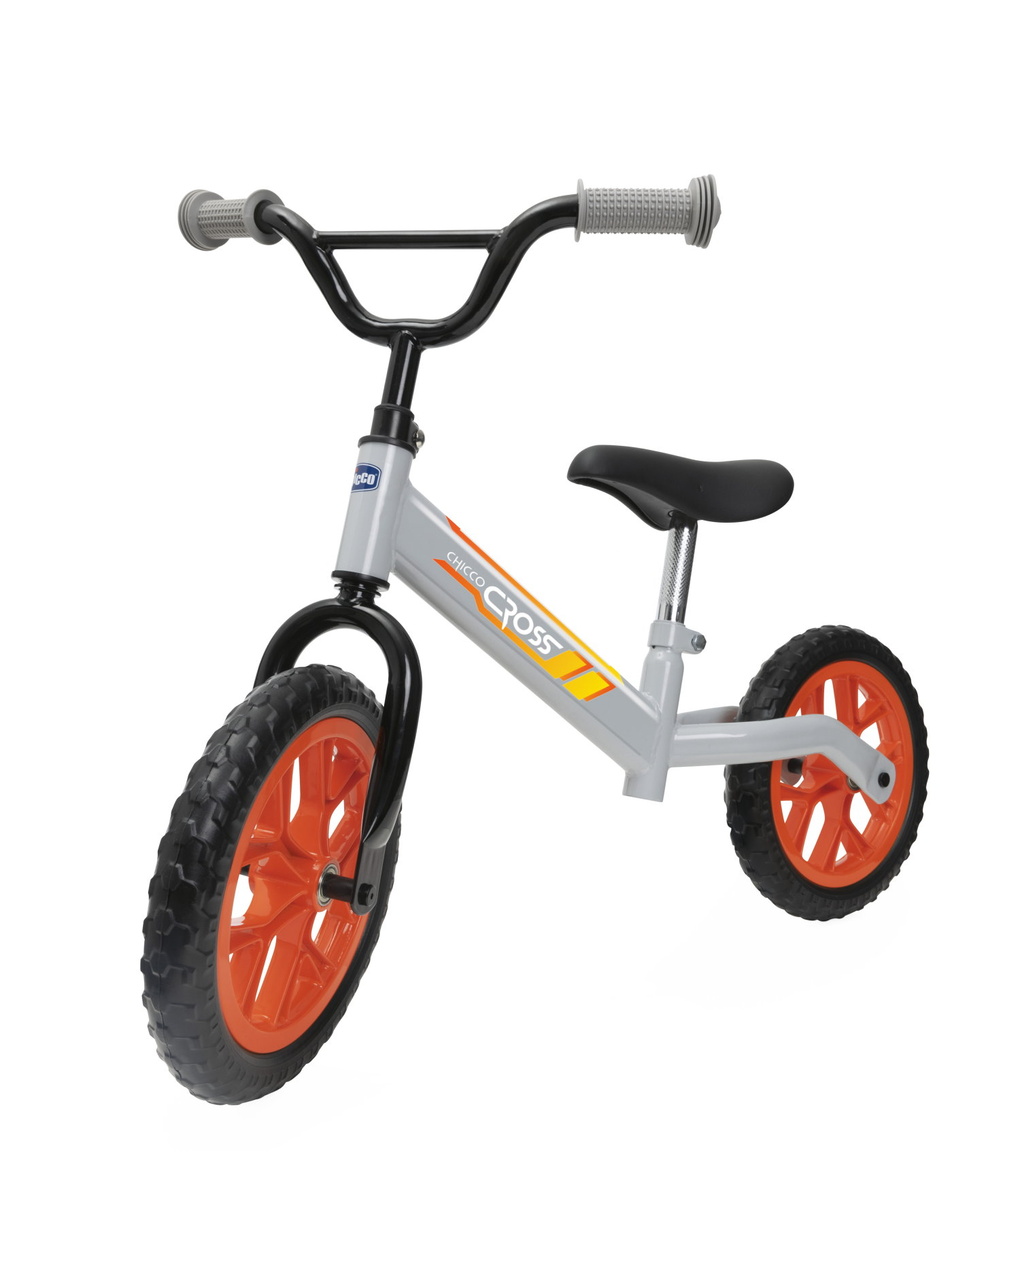 Bicicleta de equilibrio cross 2-5 años - chicco - Chicco